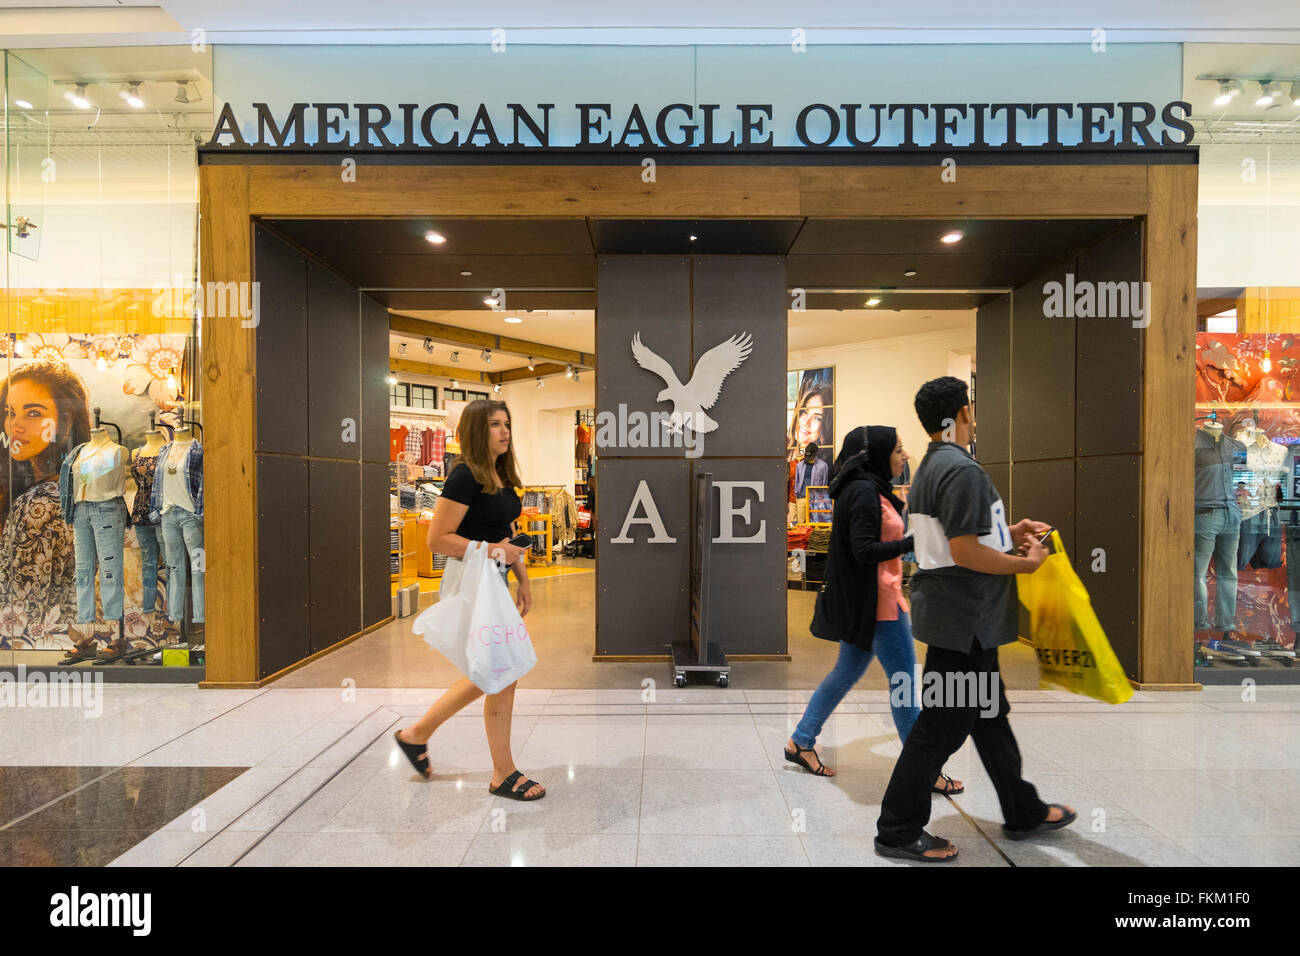 American Eagle Outfitters magasin de vêtements dans le centre commercial de Dubaï Dubaï Émirats Arabes Unis Banque D'Images